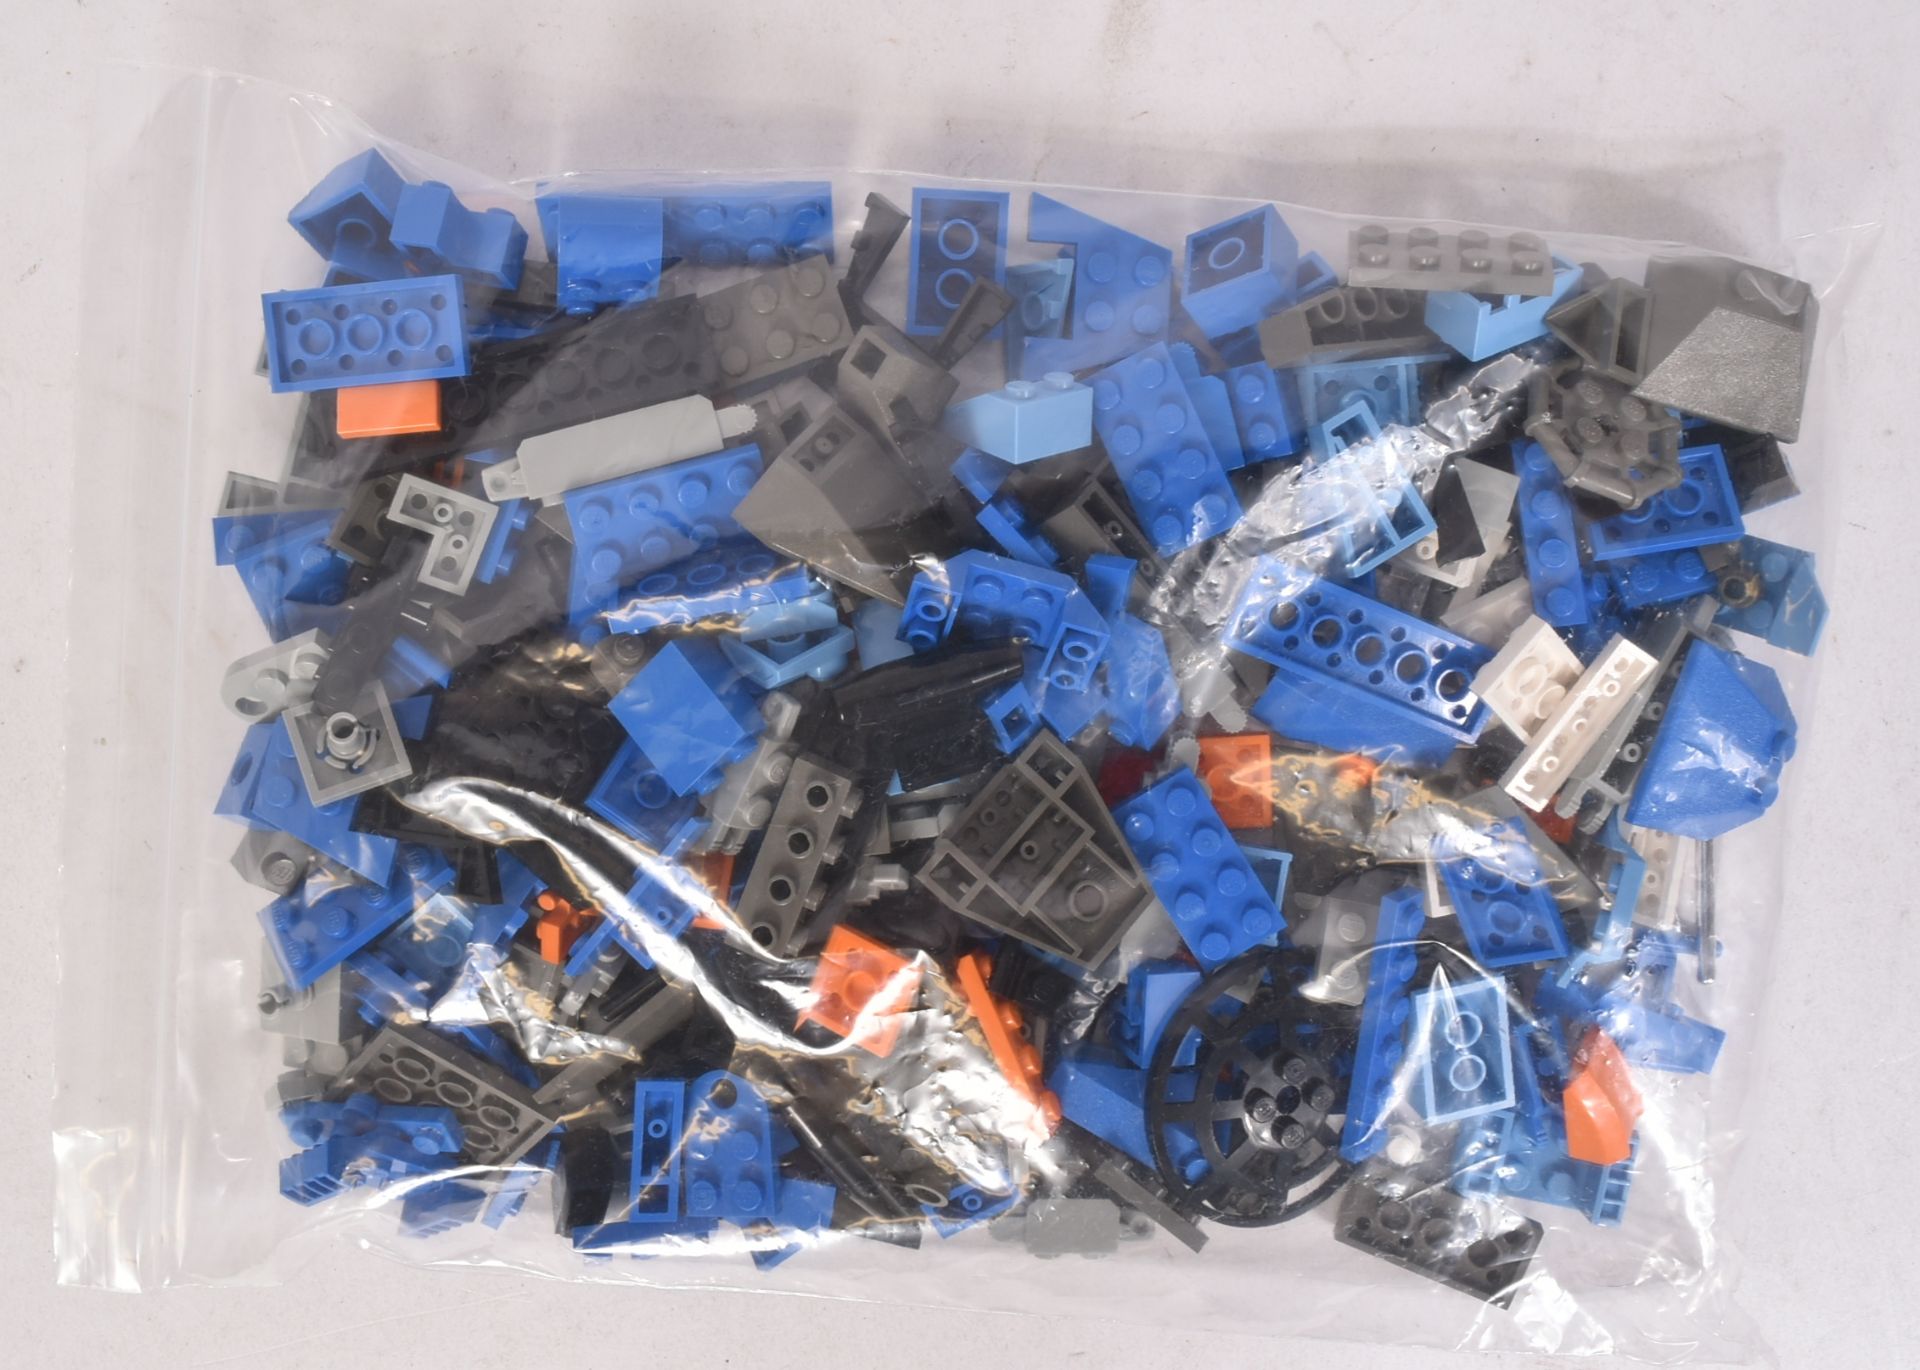 LEGO - ROBOBOTS & MAXIMUM WHEELS - Image 5 of 5